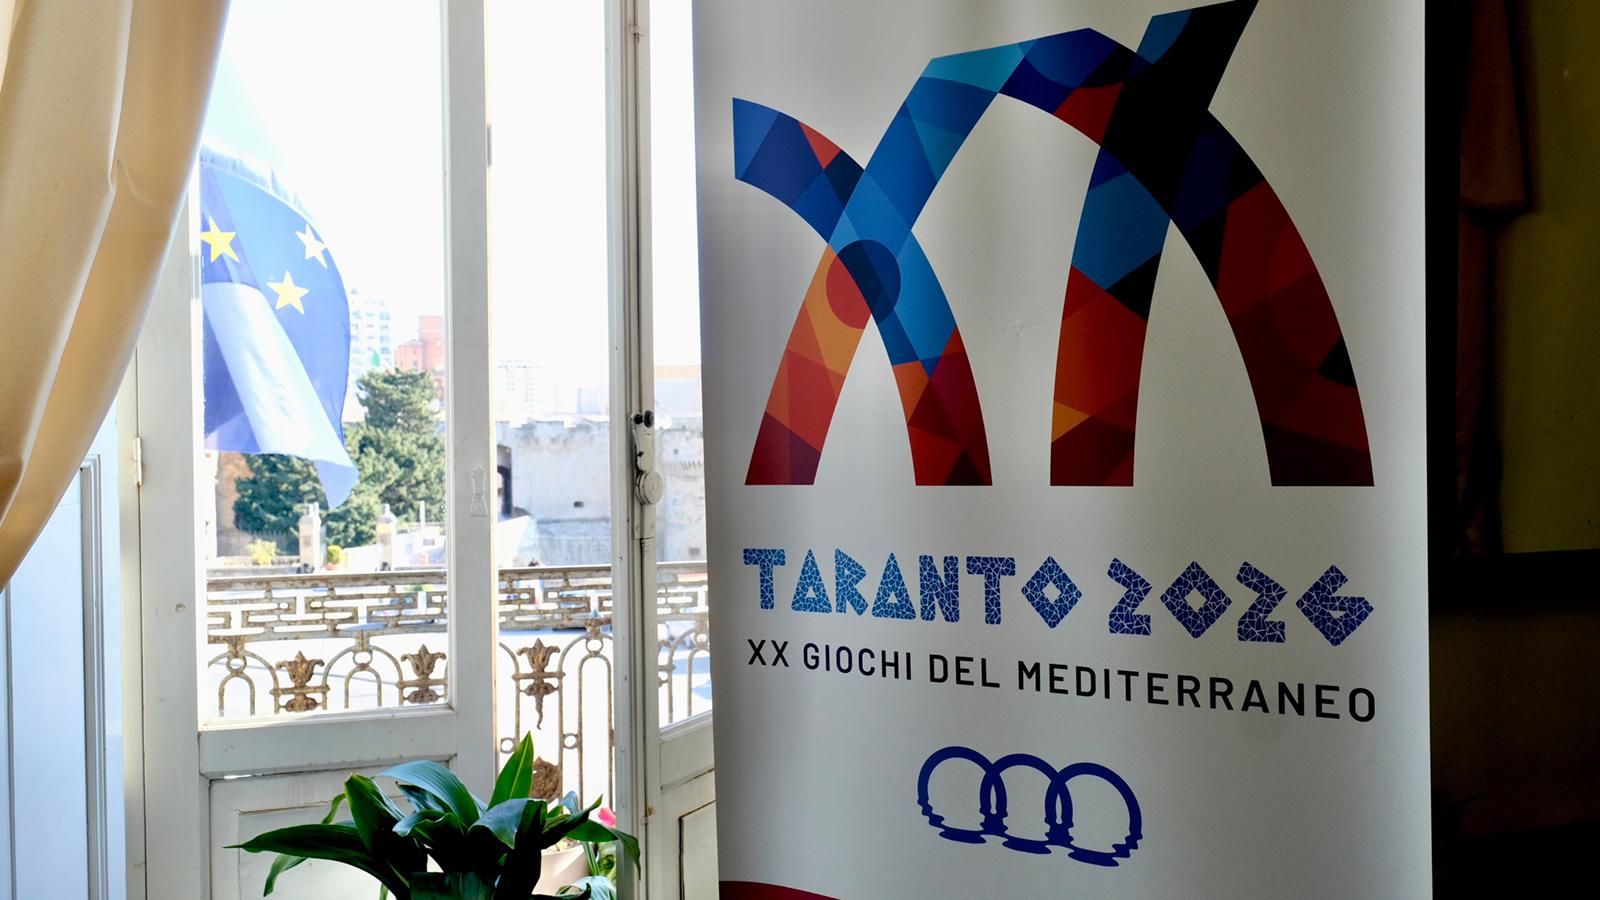 Galleria Taranto2026: la XX edizione dei Giochi del Mediterraneo come occasione per valorizzare Taranto e il suo antico ruolo da protagonista nell’area mediterranea - Diapositiva 3 di 20